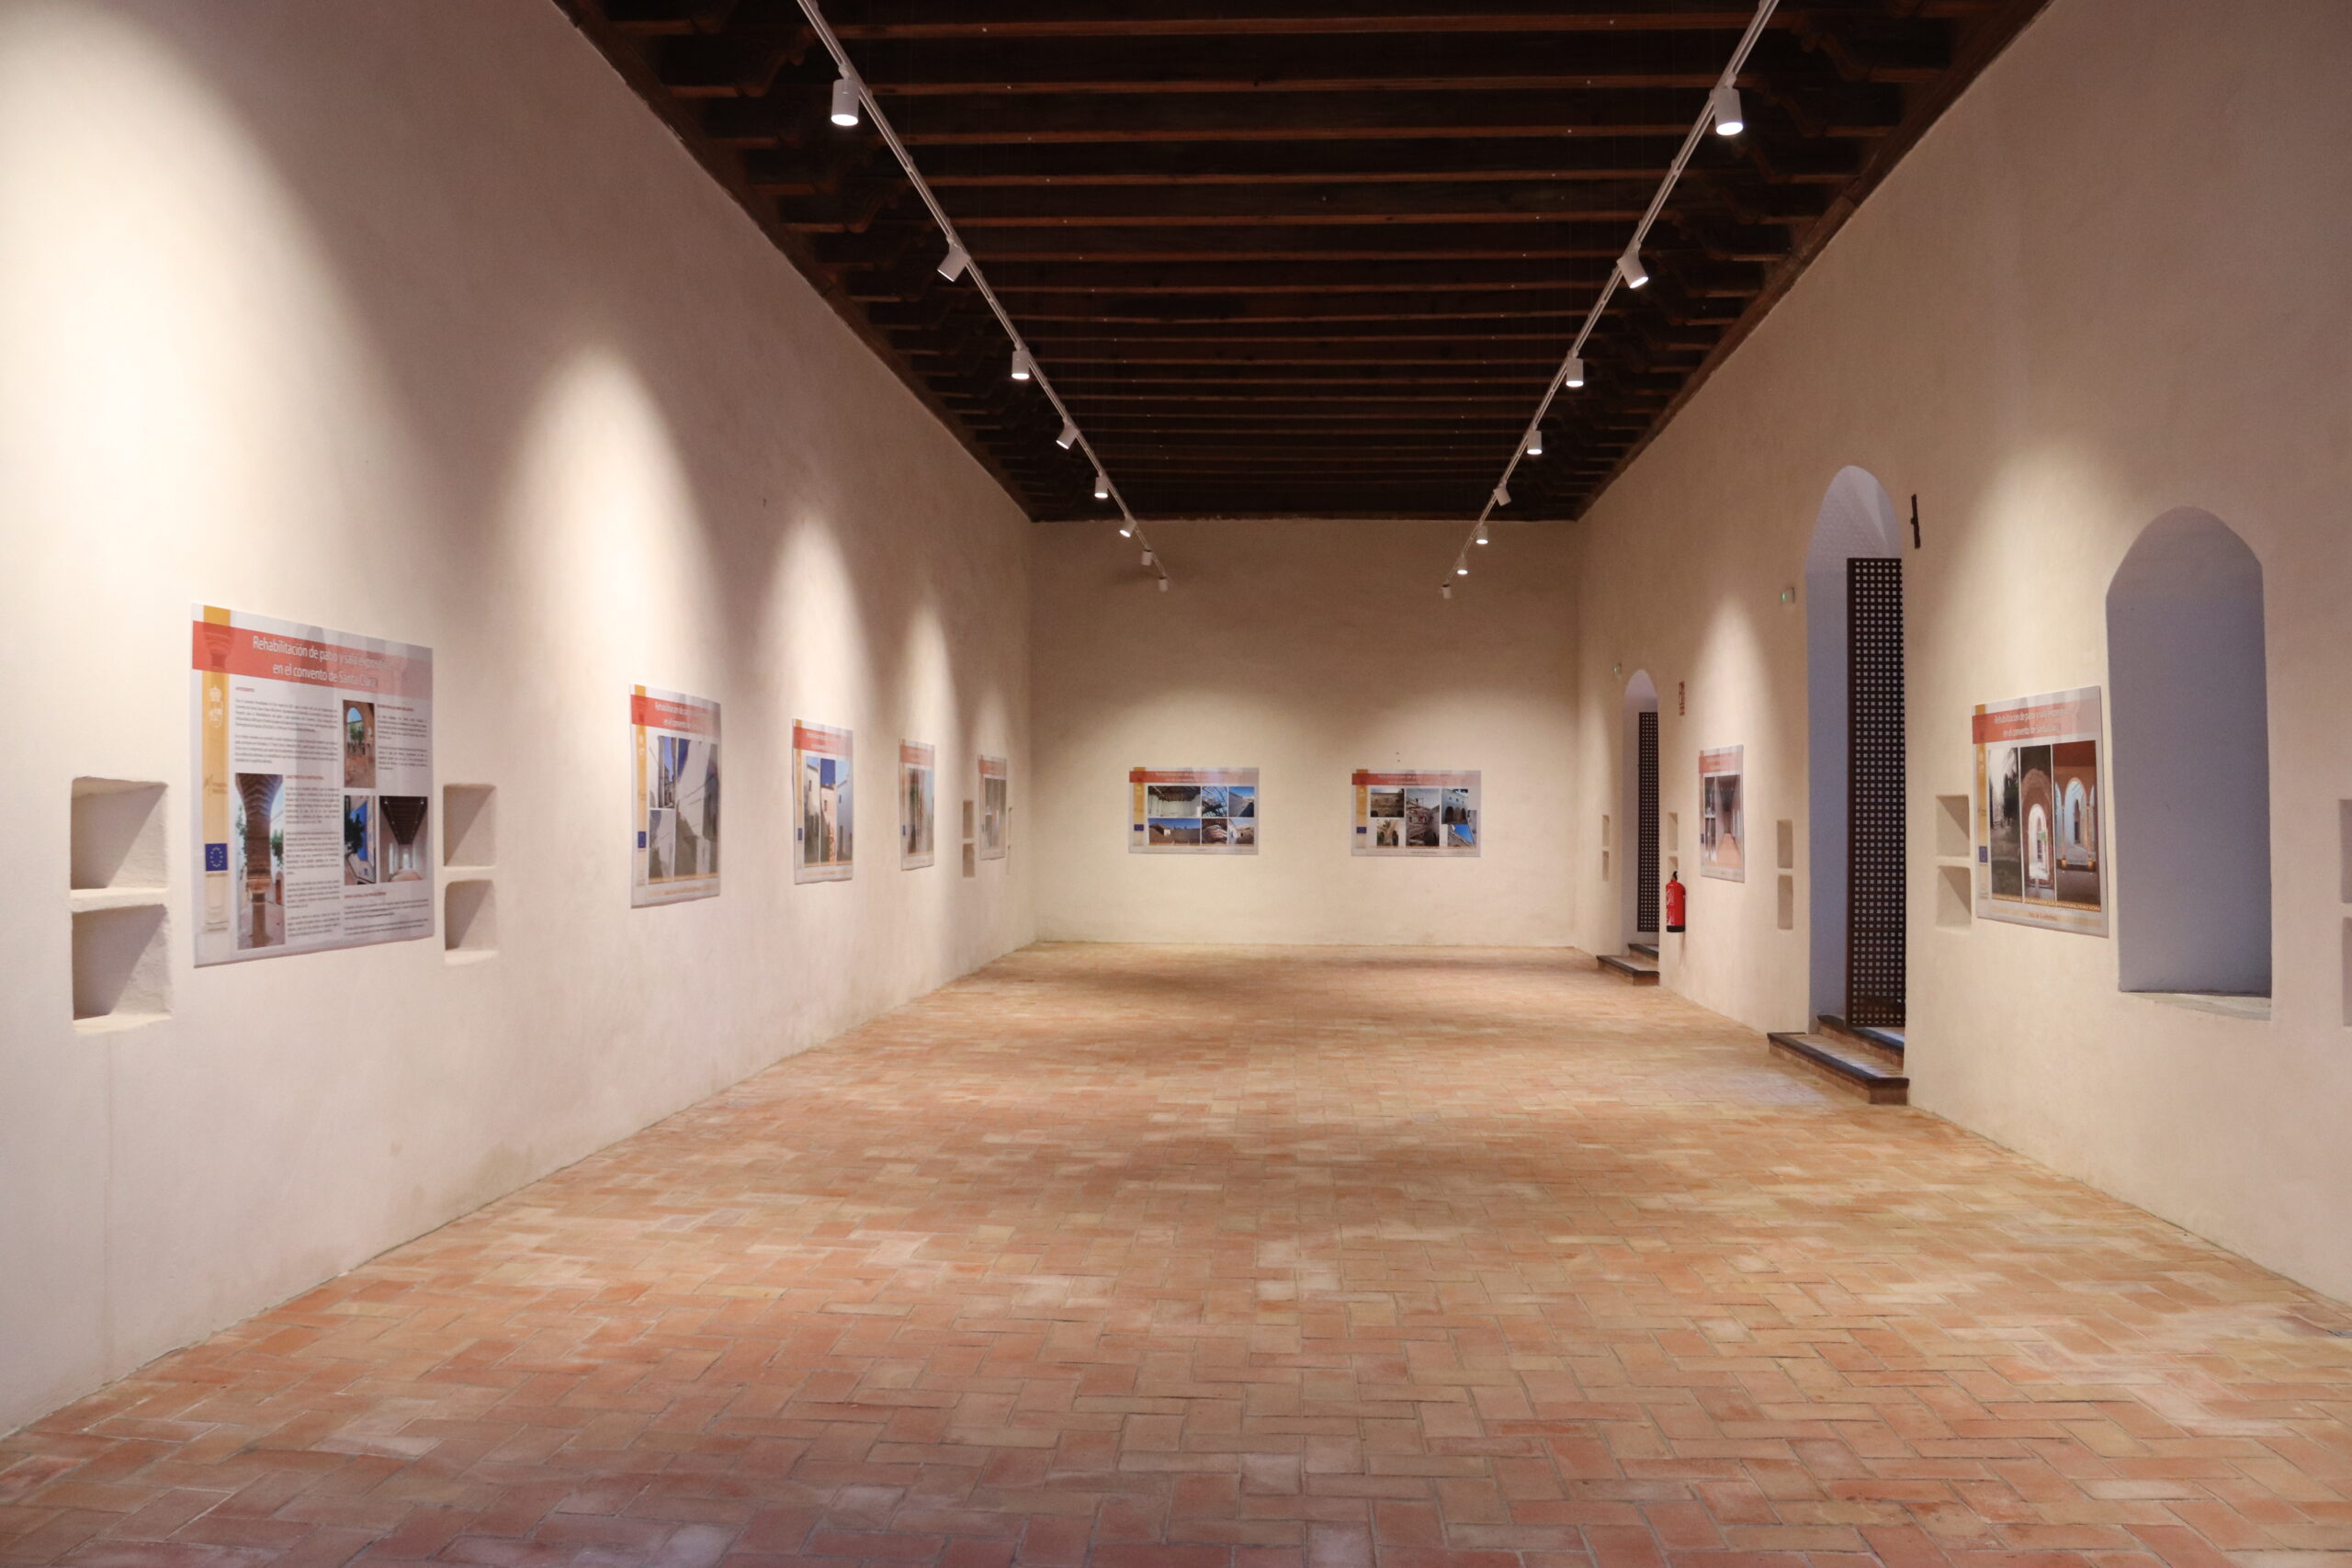 Presentación del Claustro del Pretorio de Santa Clara como nuevo espacio cultural de Montilla